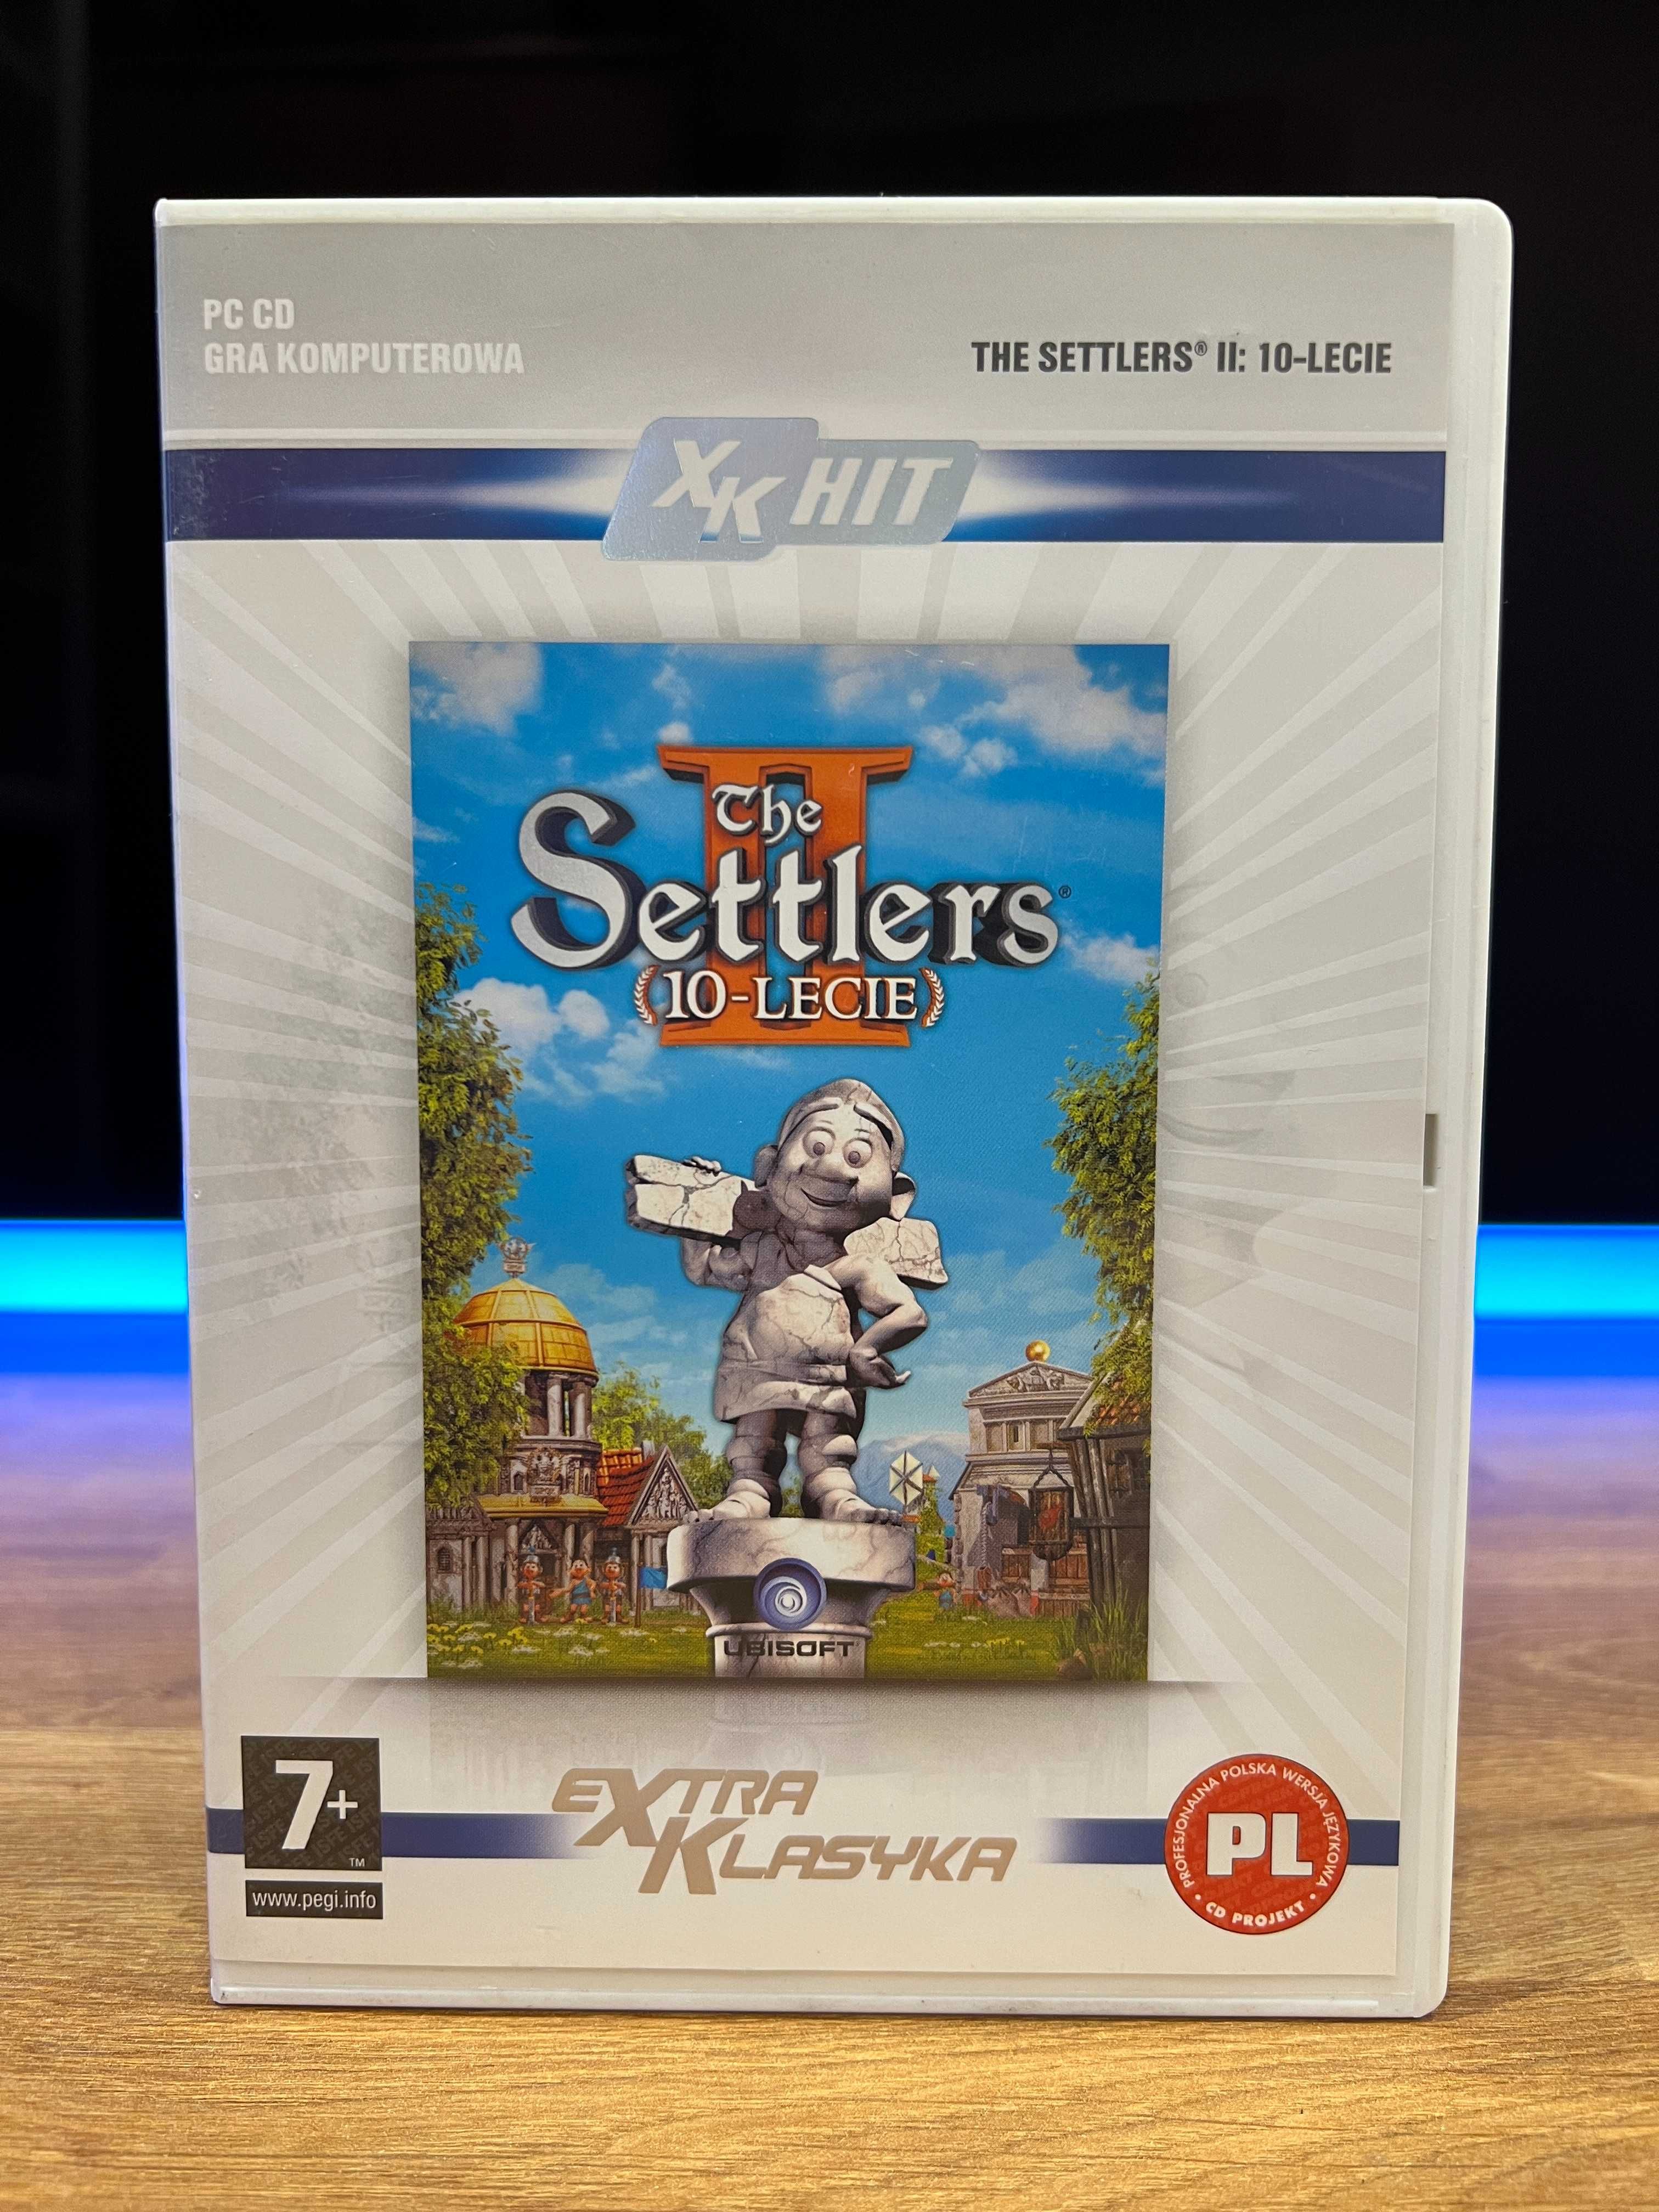 The Settlers II (10-Lecie) (PC PL 2007) CD BOX wydanie eXtra Klasyka